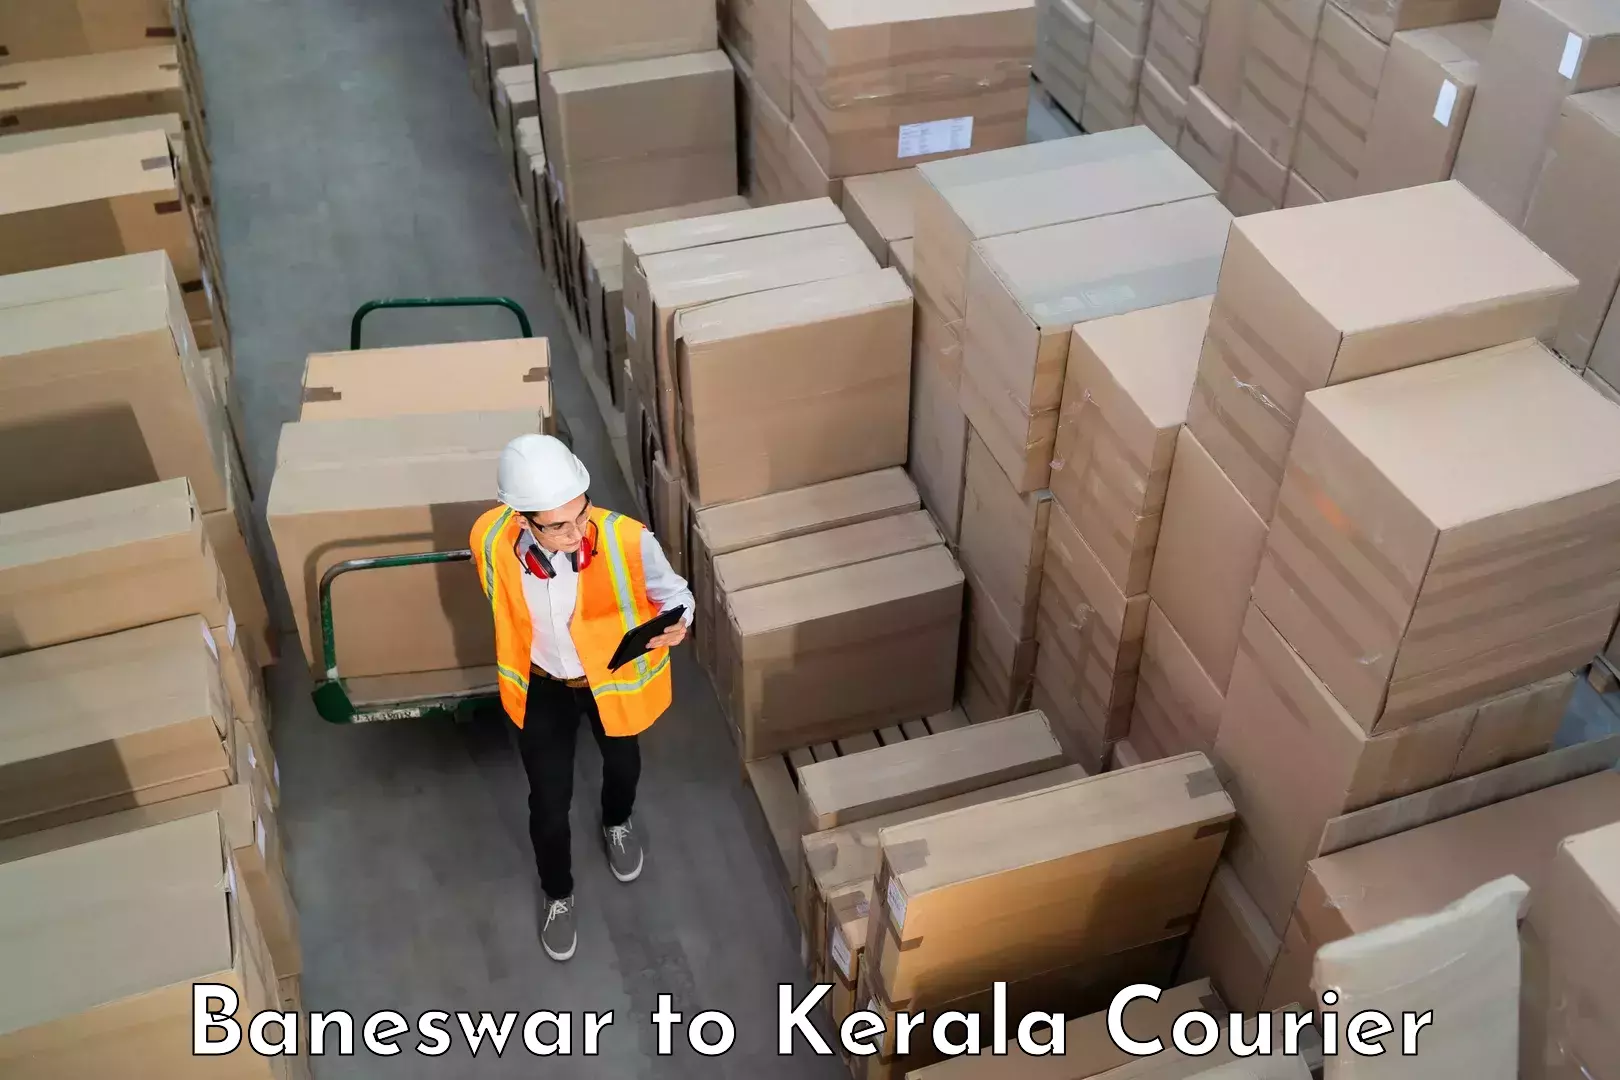 Electronic items luggage shipping Baneswar to IIIT Kottayam